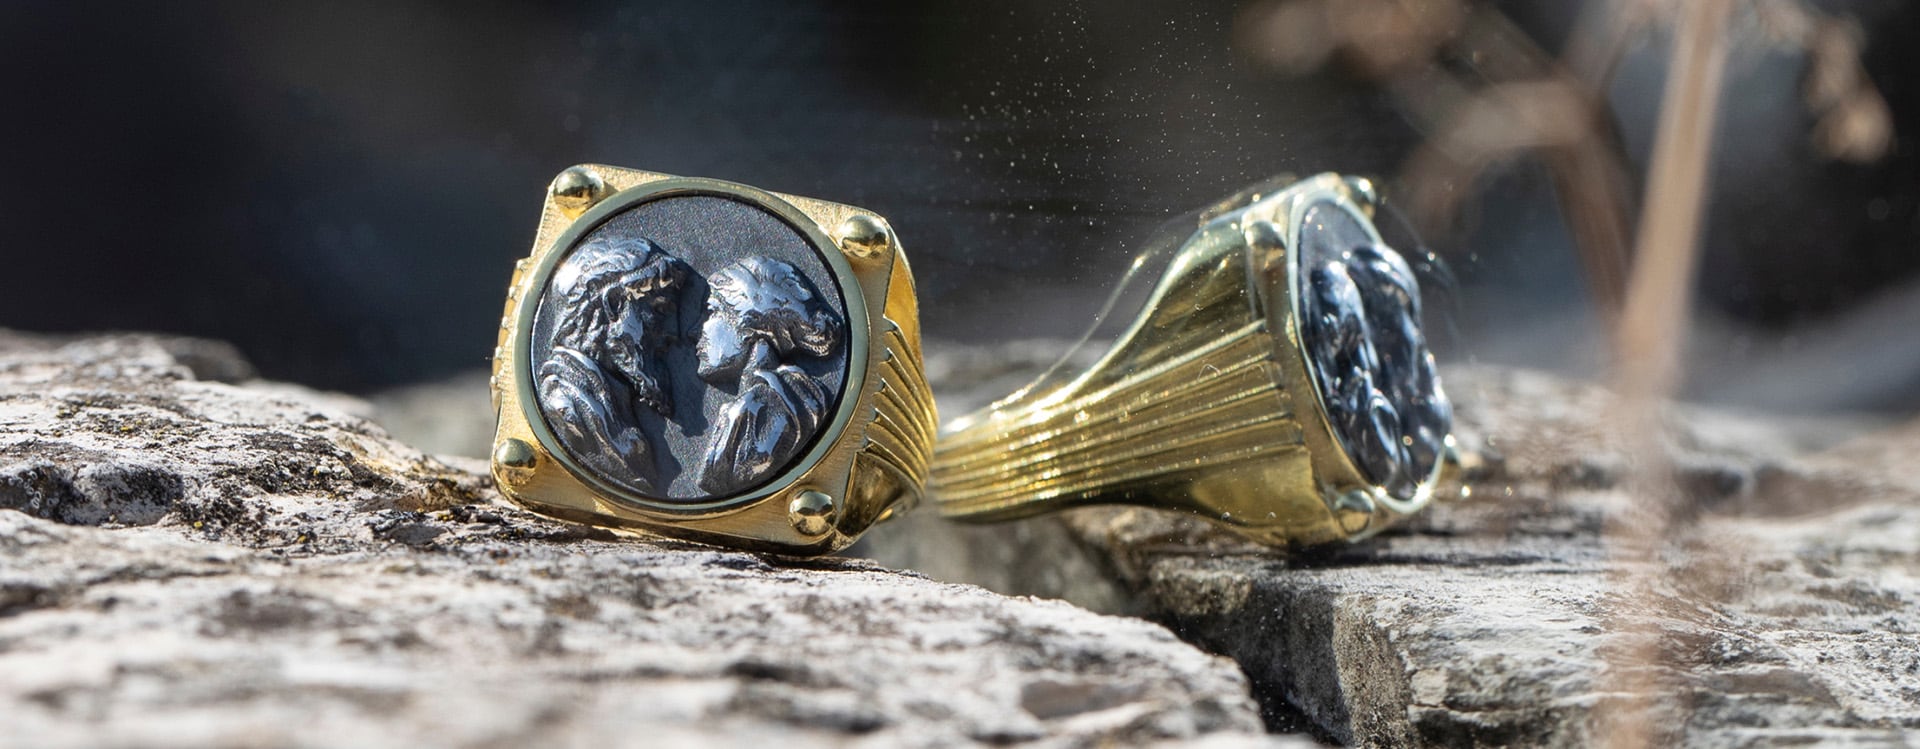 Odissea, l’esclusiva capsule collection di gioielli in argento ideata, ispirata da uno dei due più grandi poemi epici greci attribuiti al poeta Omero.